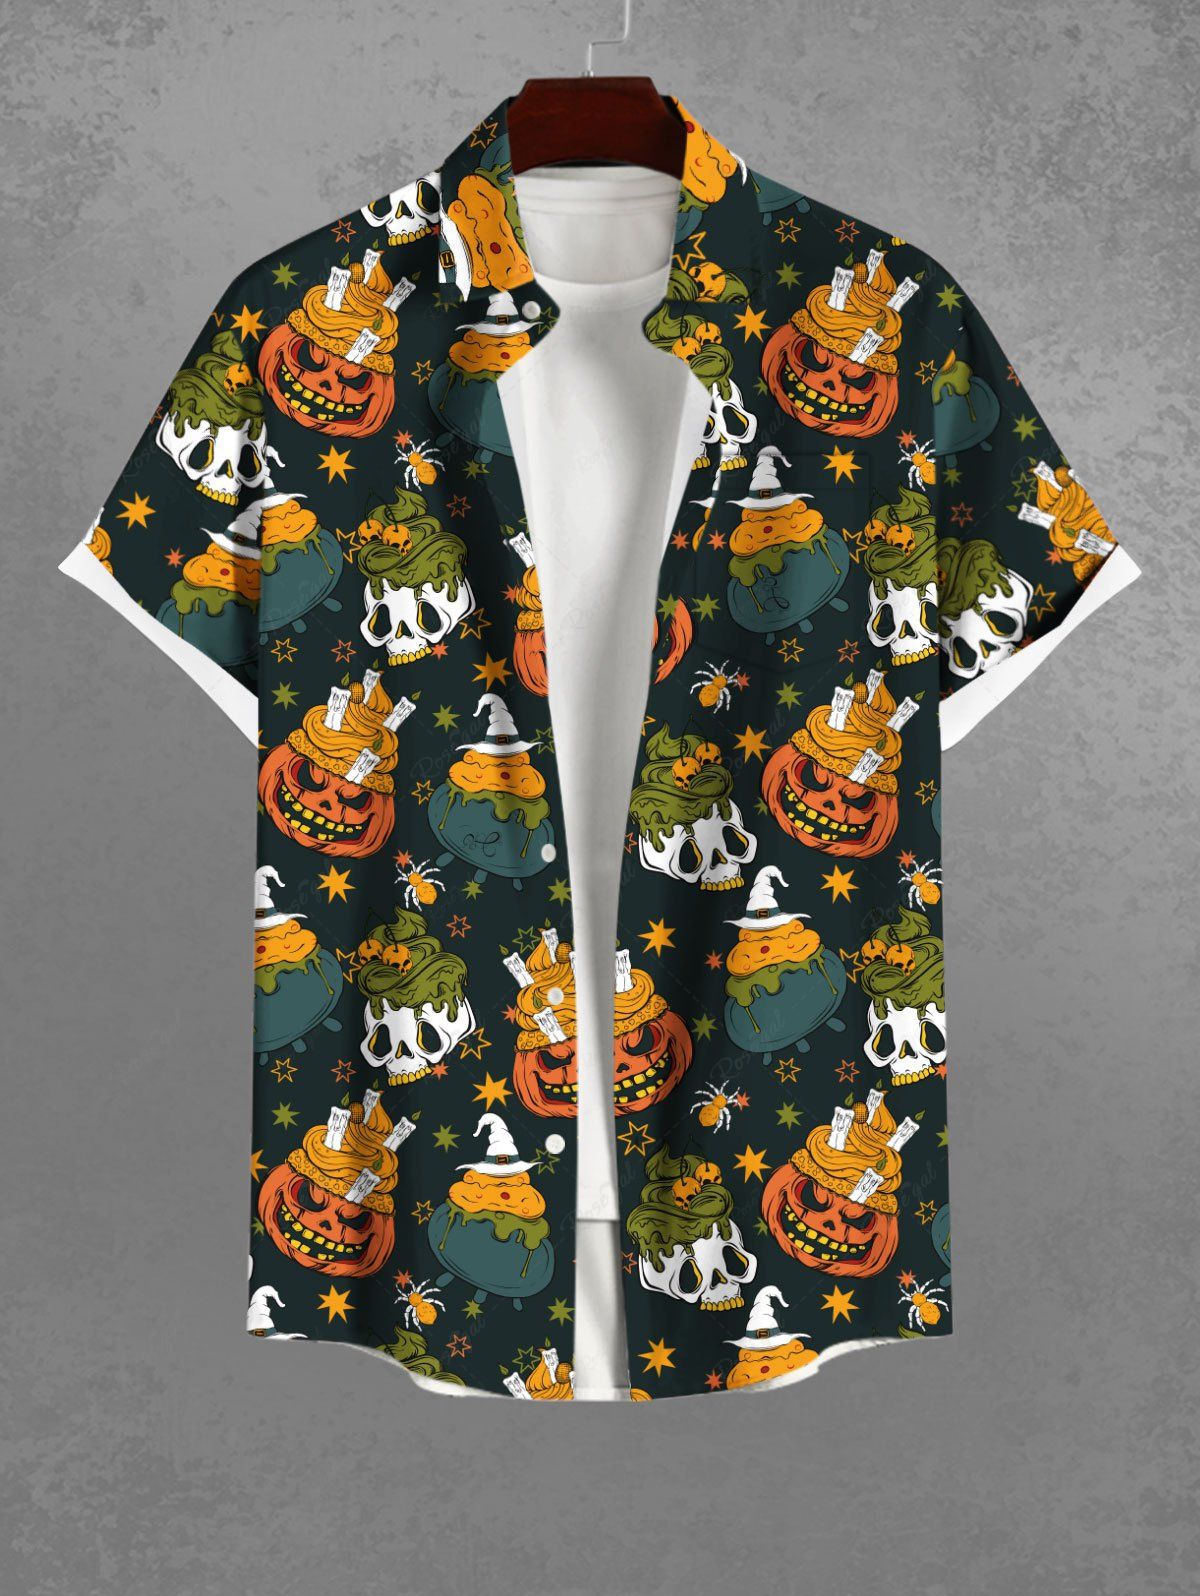 Gothic Pumpkin Skull Ice Cream Spider Star Hat Print Halloween Button Pocket Shirt For Men